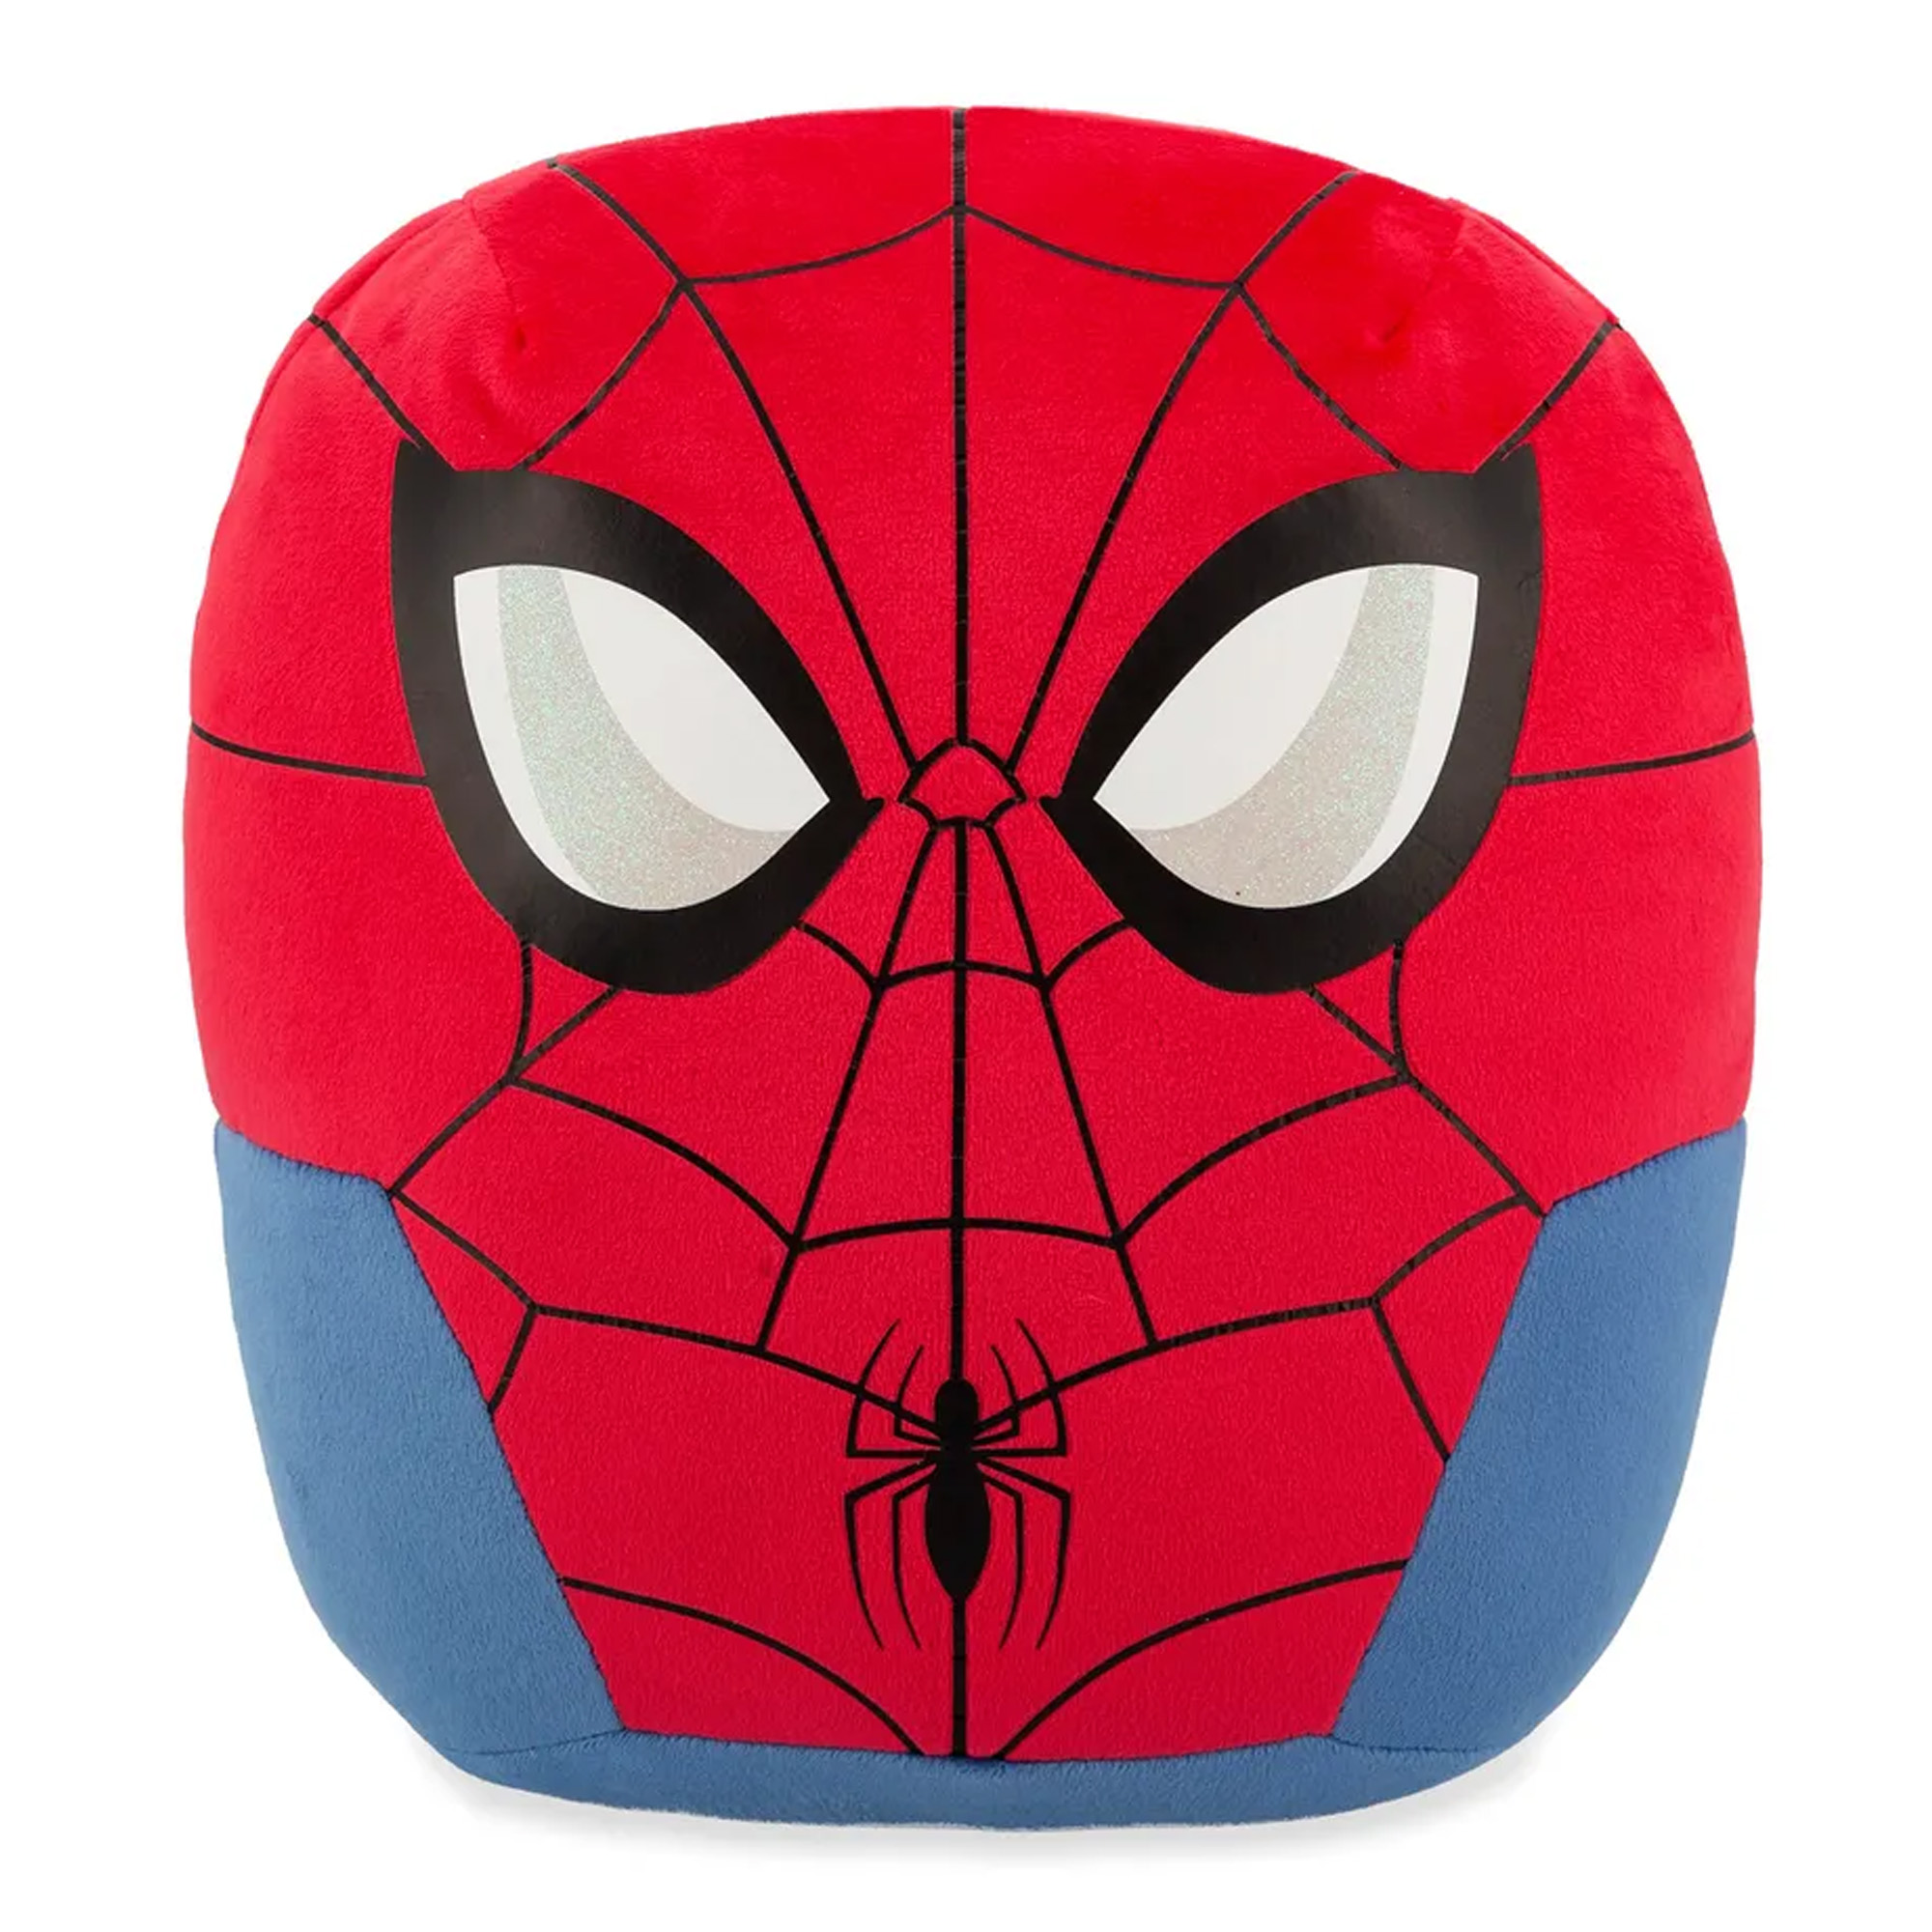 Spider-Man Squishy Beanies Plüschkissen (35 cm) - Marvel